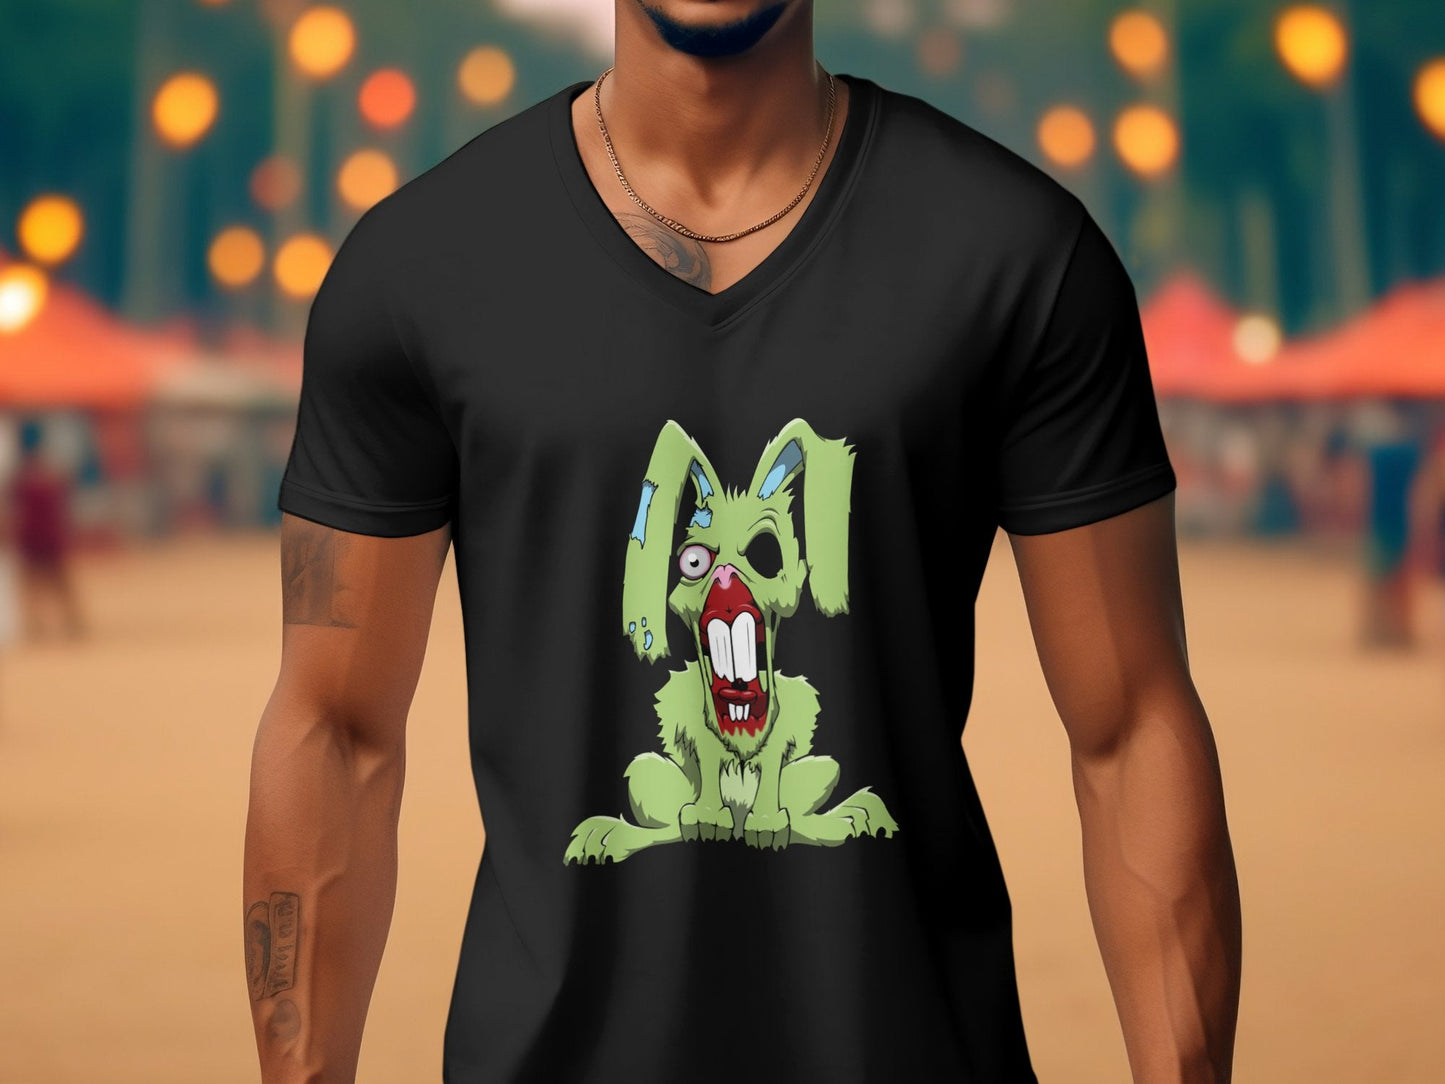 Evil demonic rabbit zombie Halloween Men's tee - Premium t-shirt from MyDesigns - Just $19.95! Shop now at Lees Krazy Teez